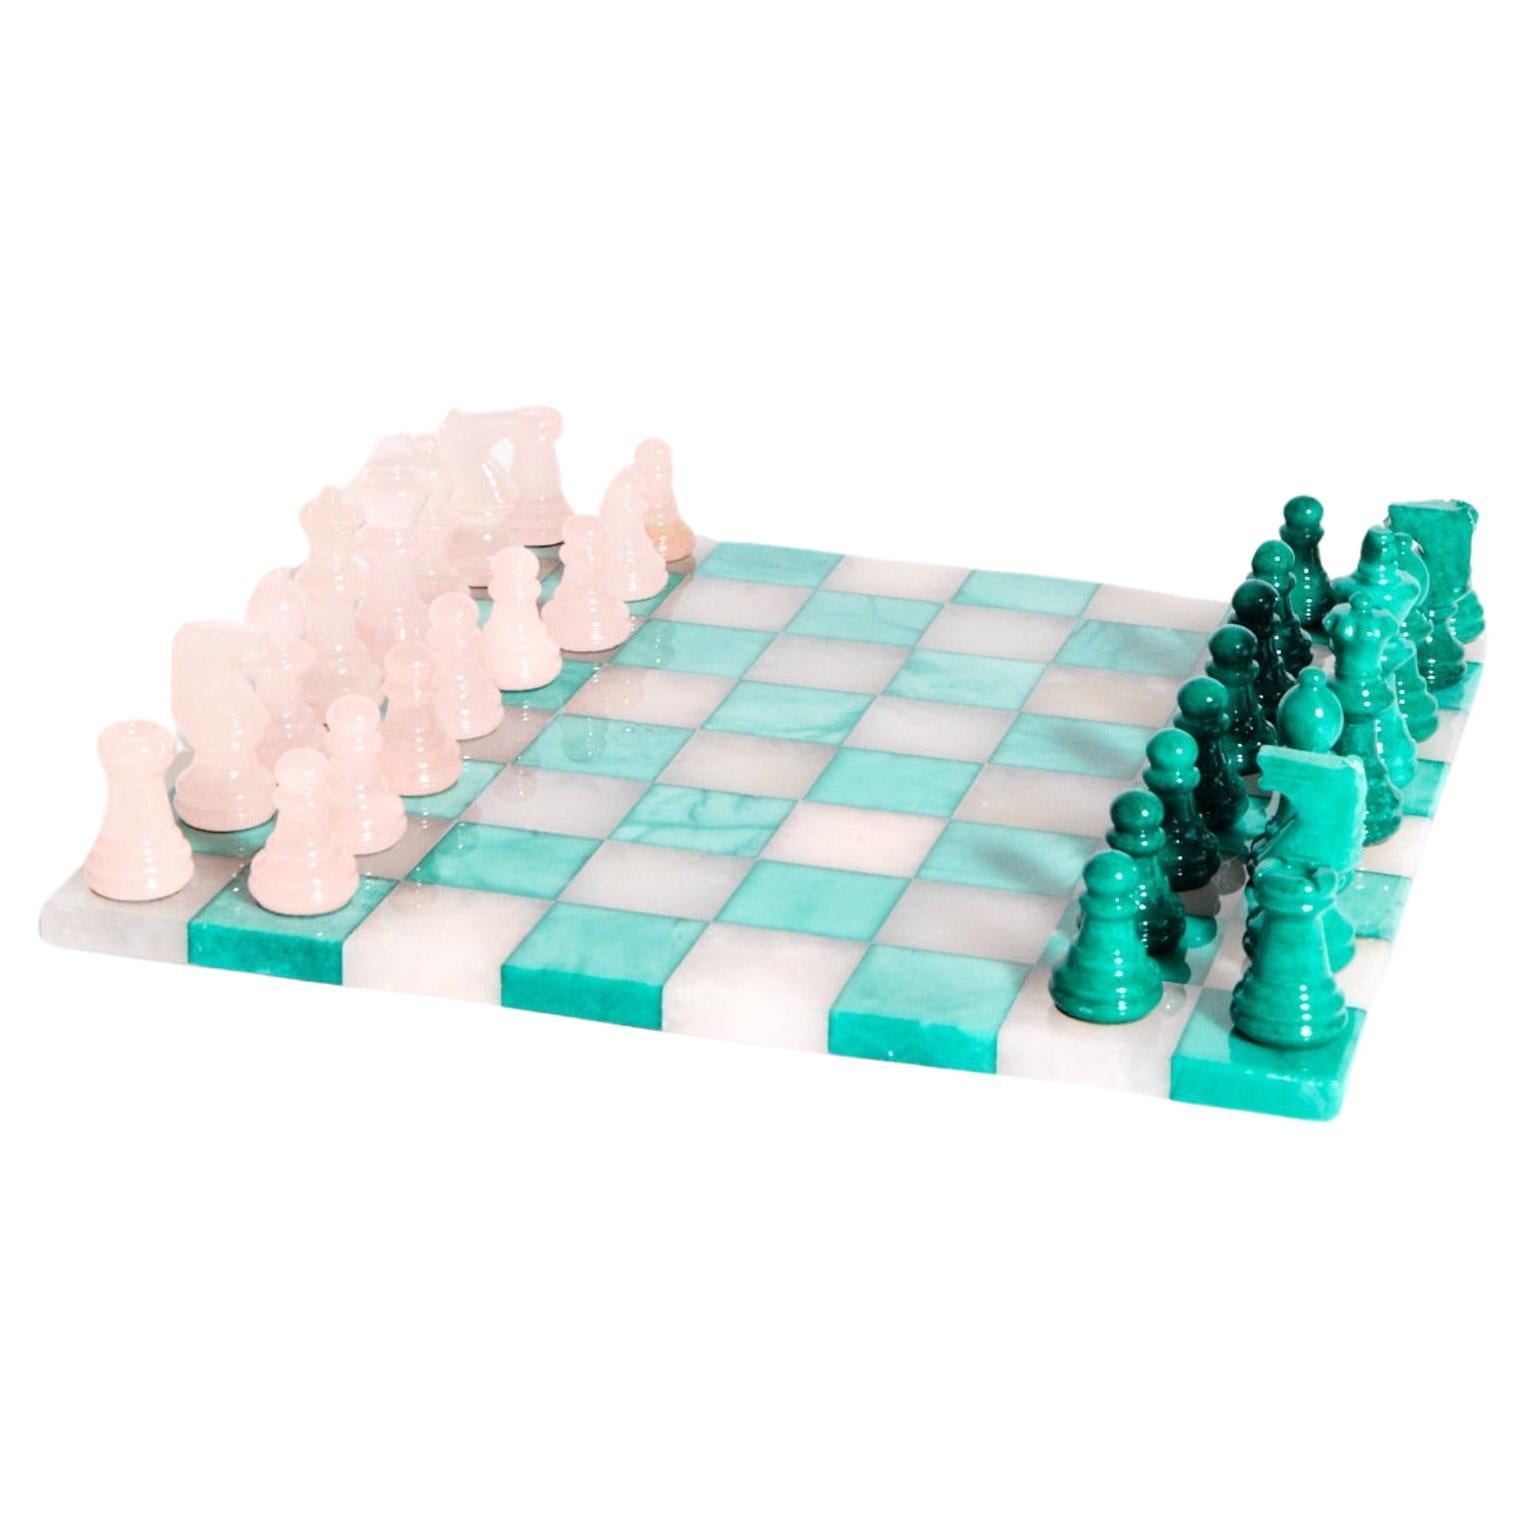 Grand jeu d'échecs italien en albâtre rose pâle/vert malachite